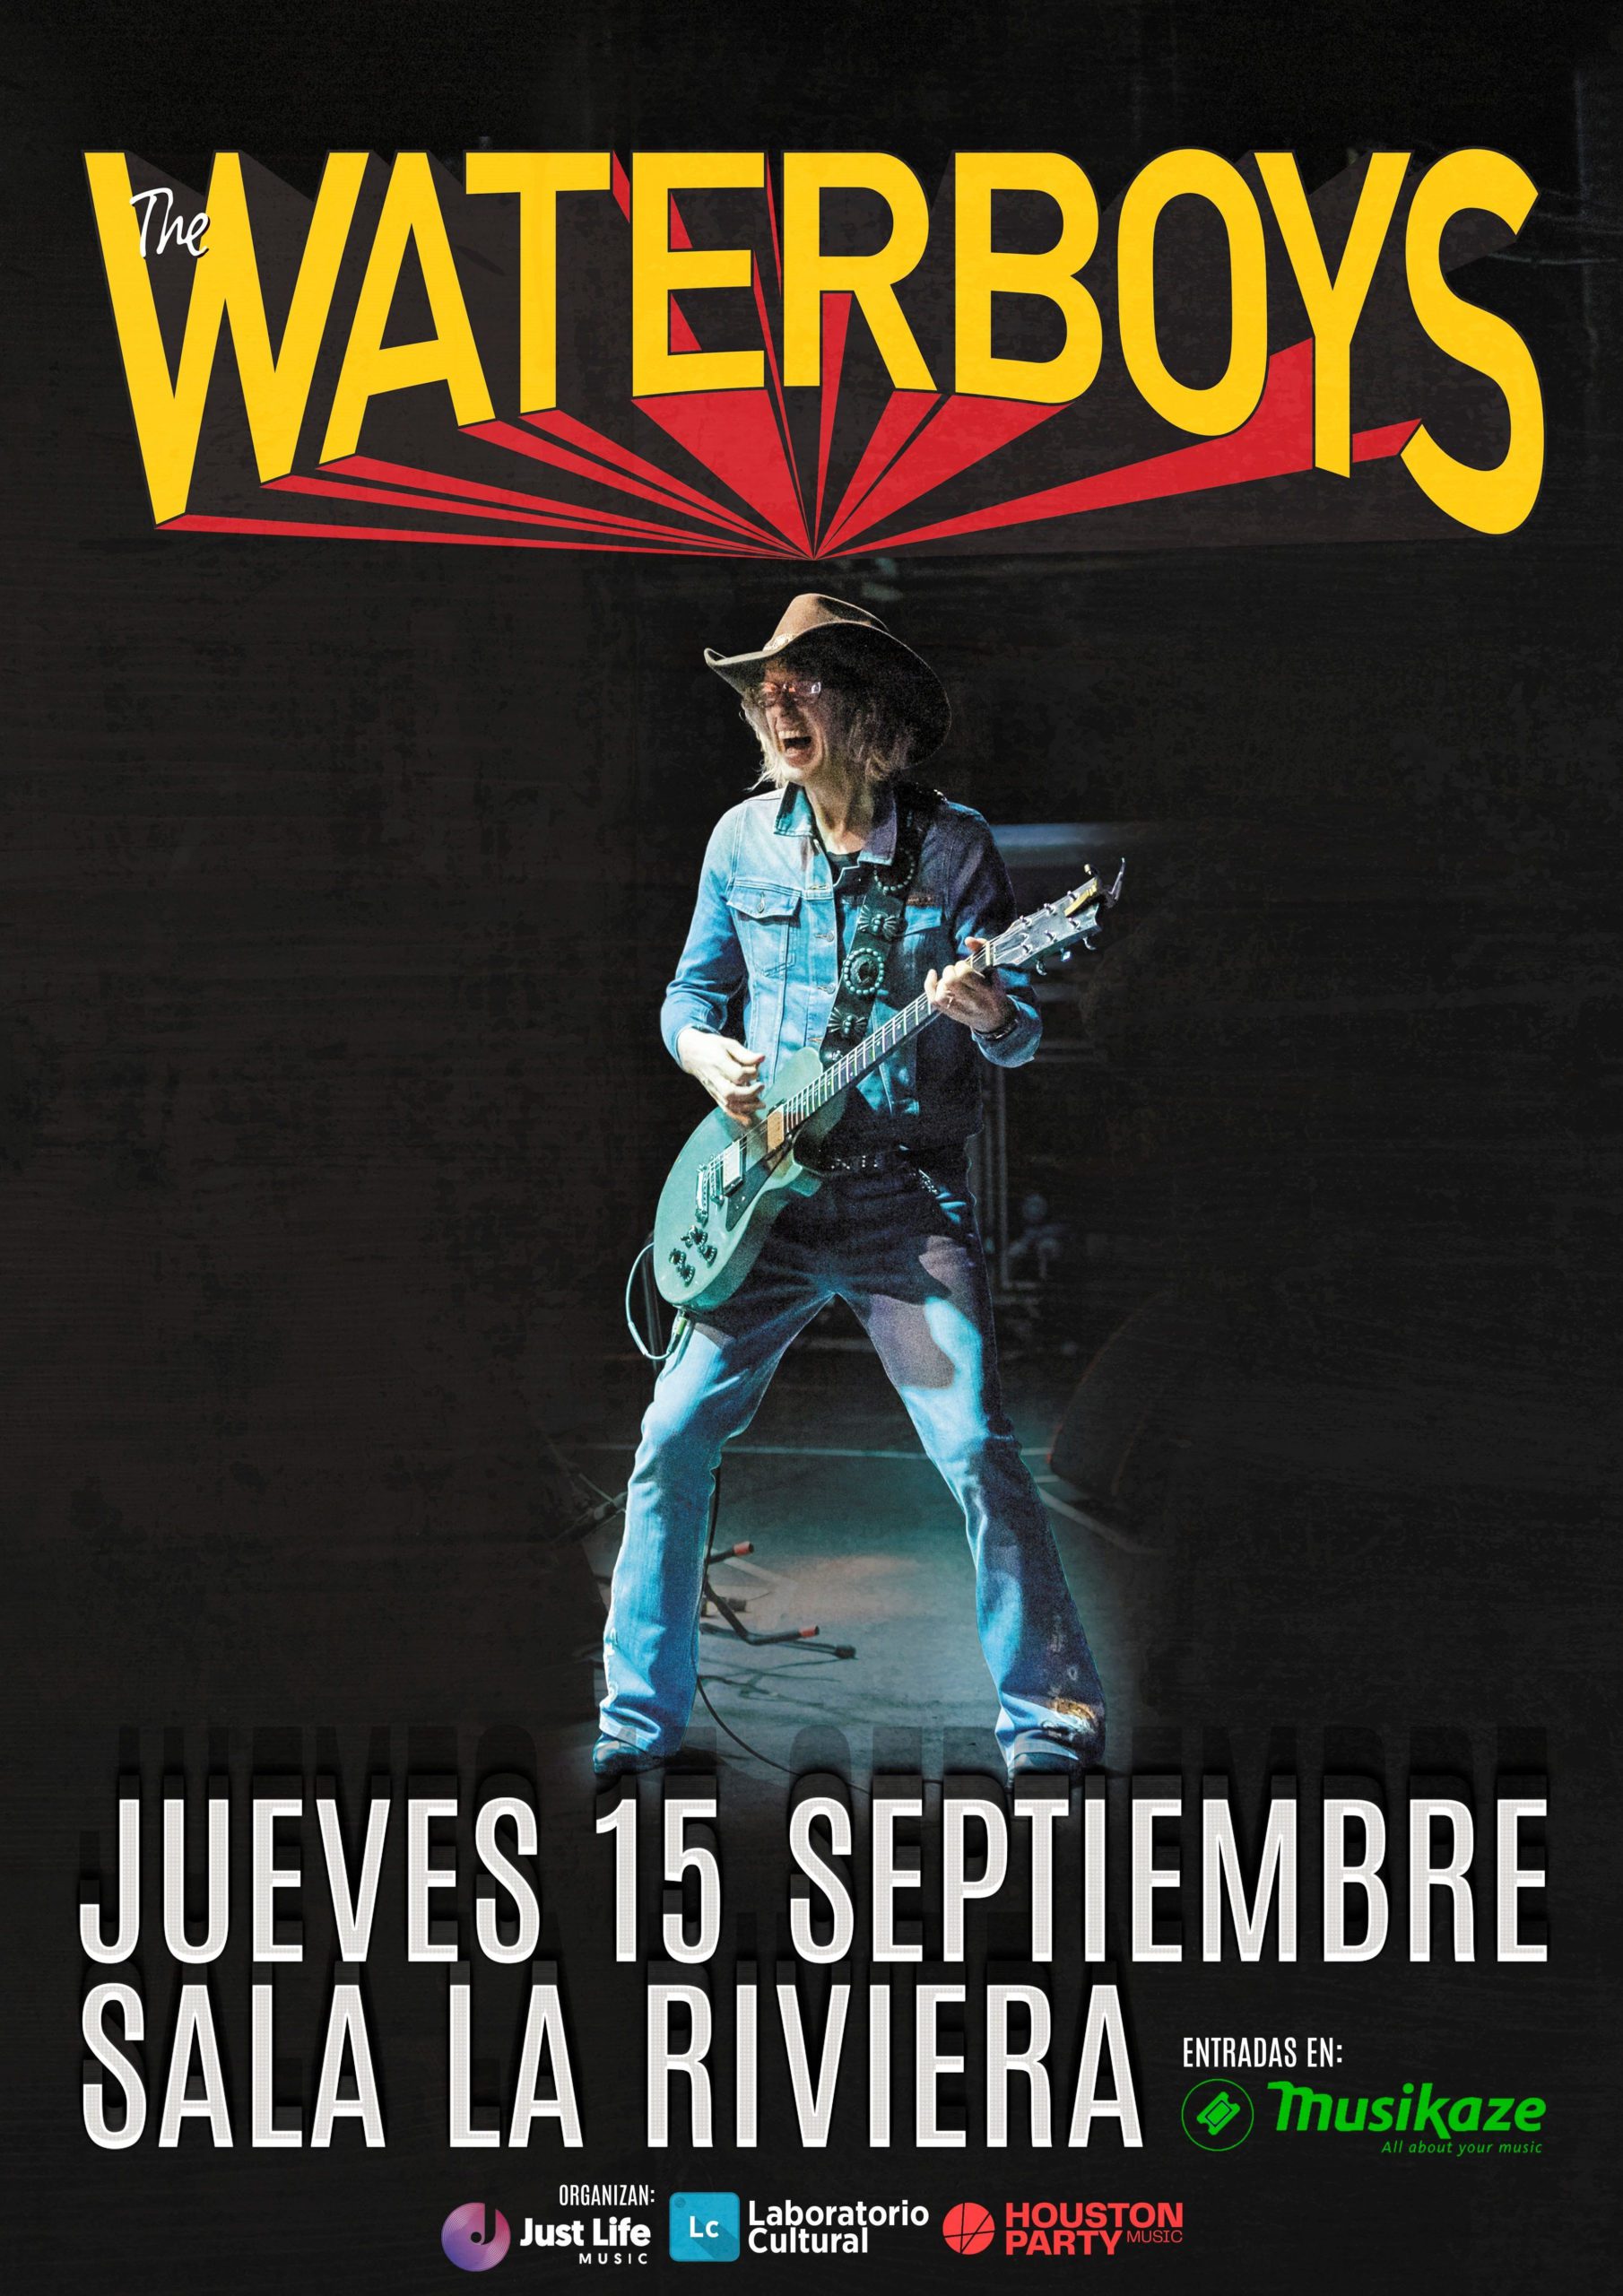 THE WATERBOYS en Madrid el próximo septiembre